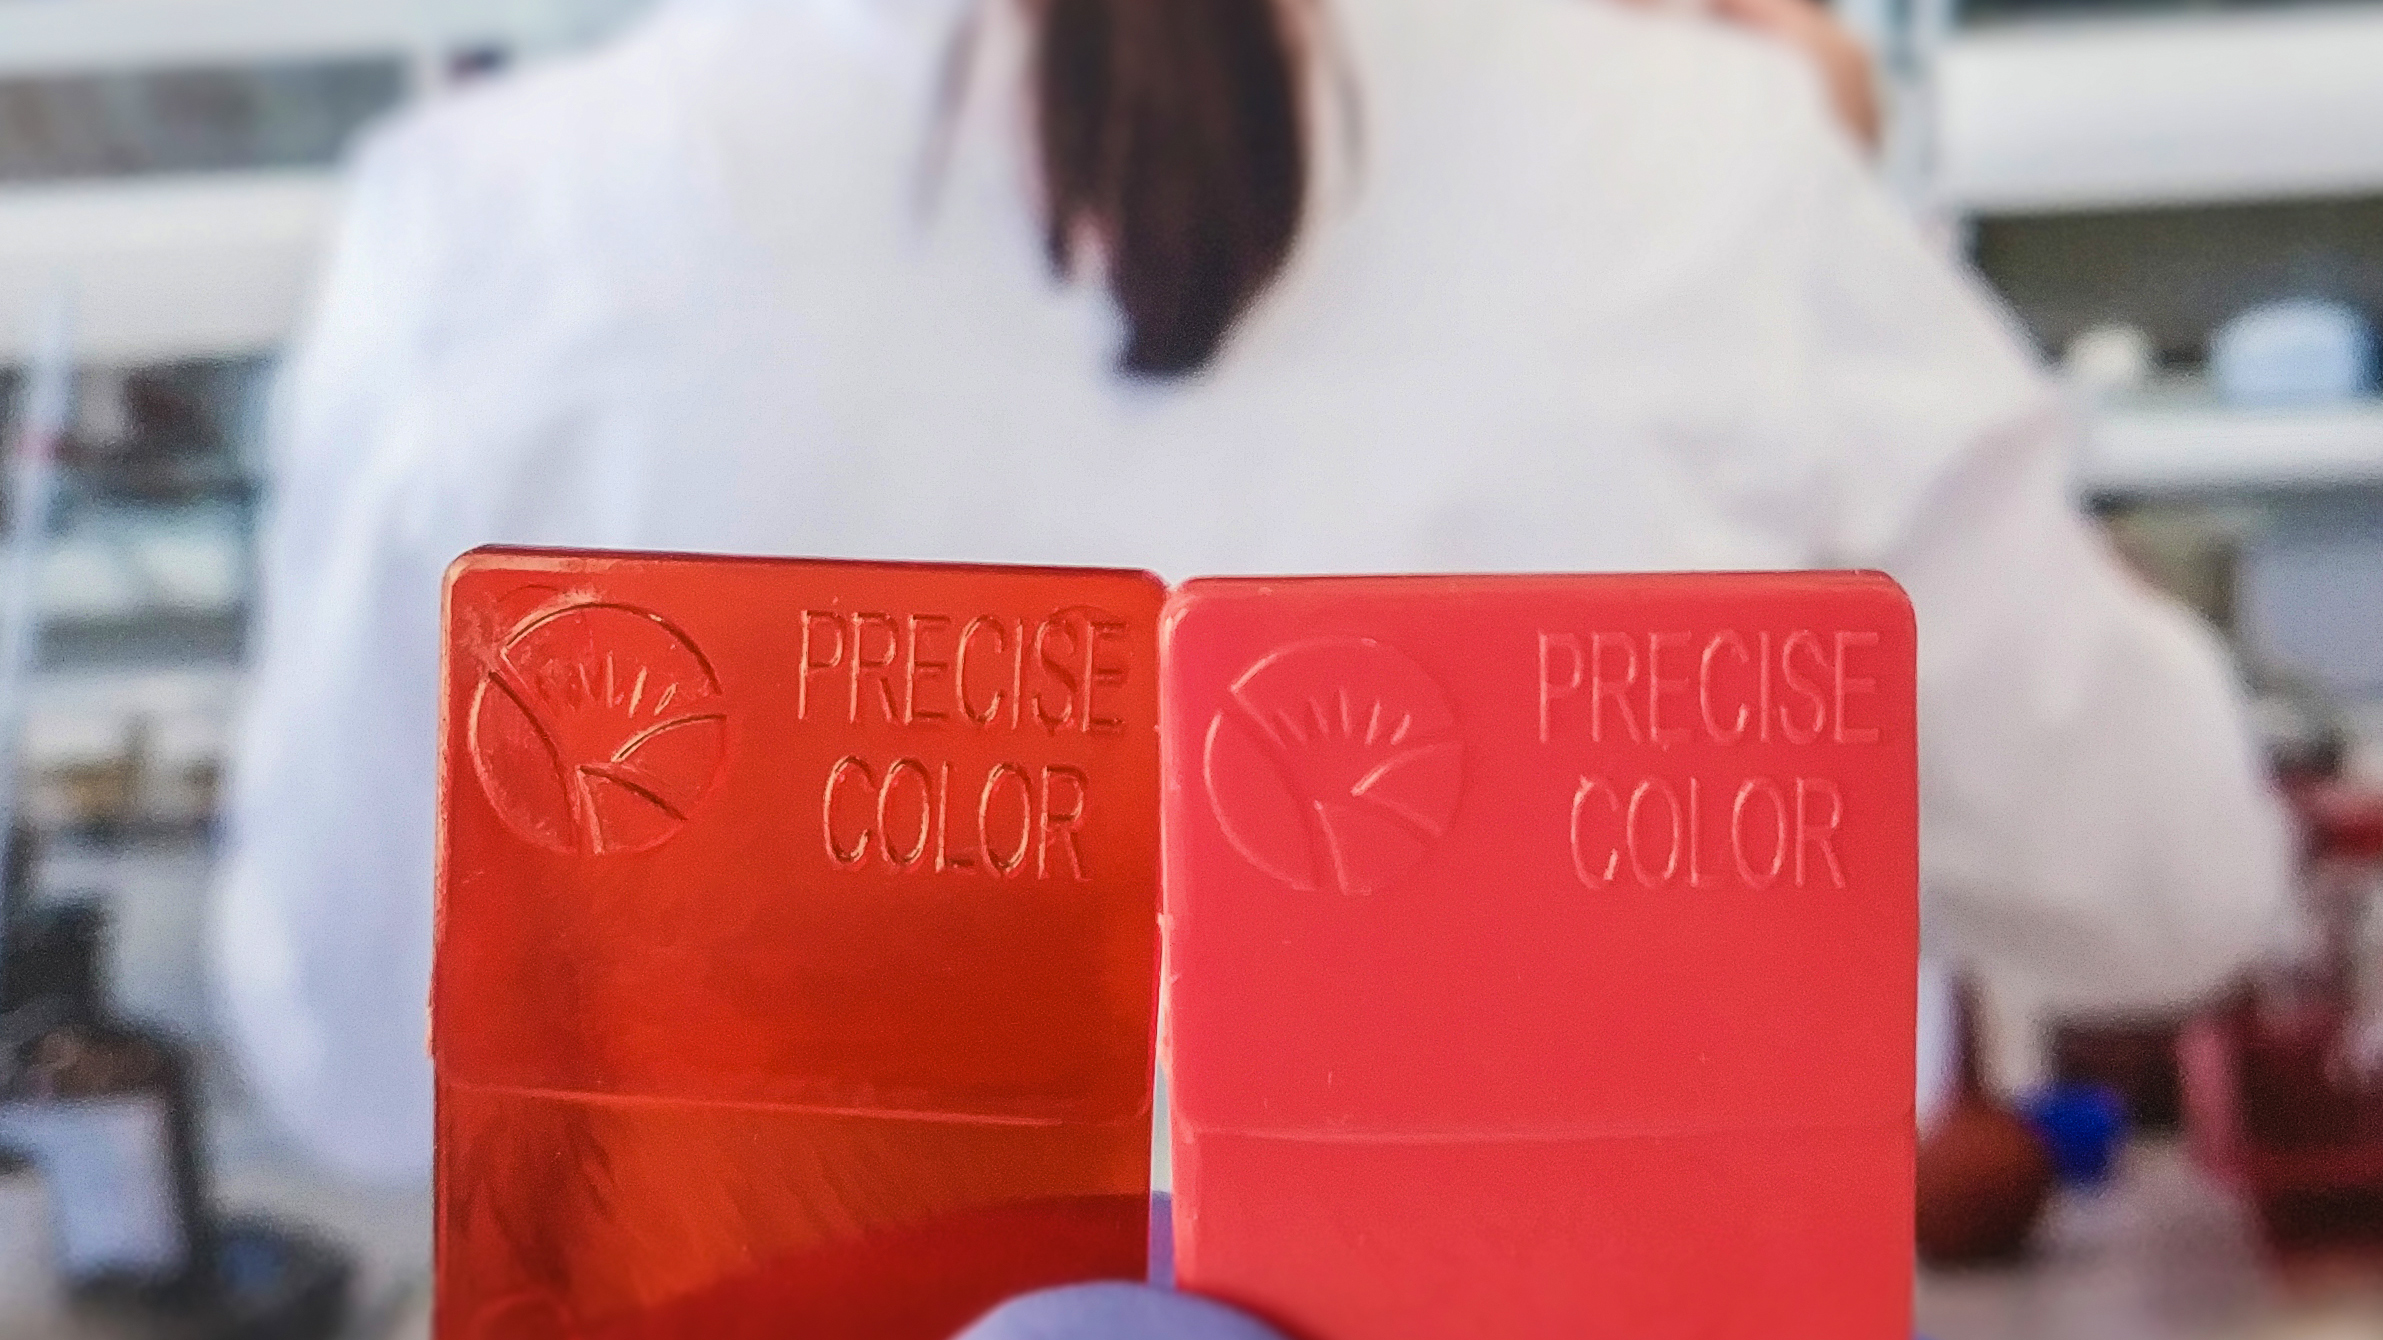 Preperse pigment kukonzekera pre-omwazika pigment kwa pulasitiki masterbatch